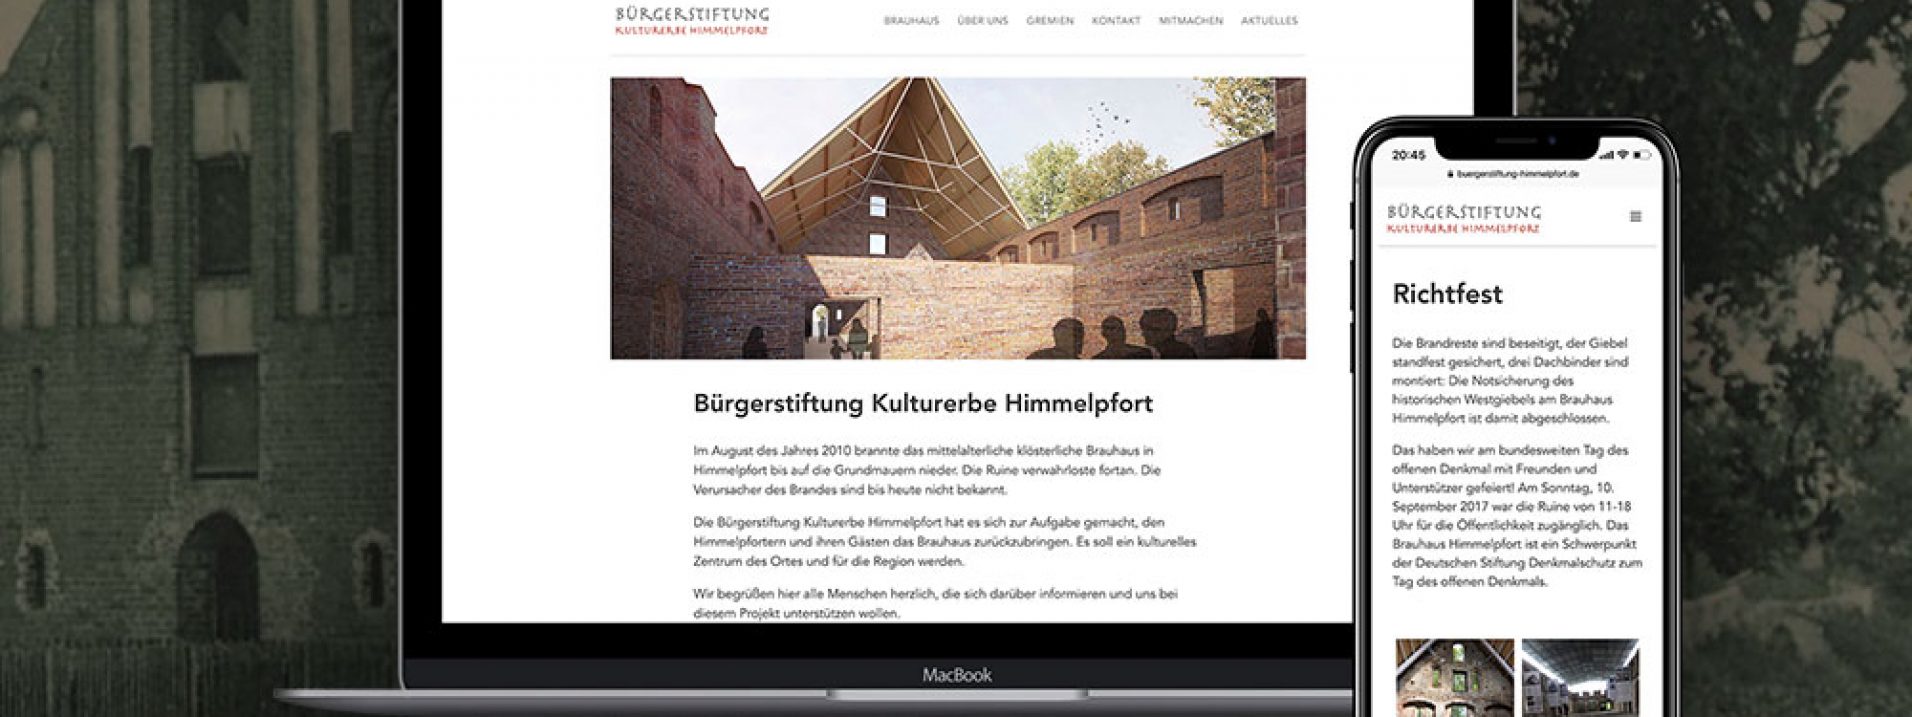 Vorschau des Referenzprojekts „Bürgerstiftung Kulturerbe Himmelpfort“ der Berliner Werbeagentur und Internetagentur Dive Designs